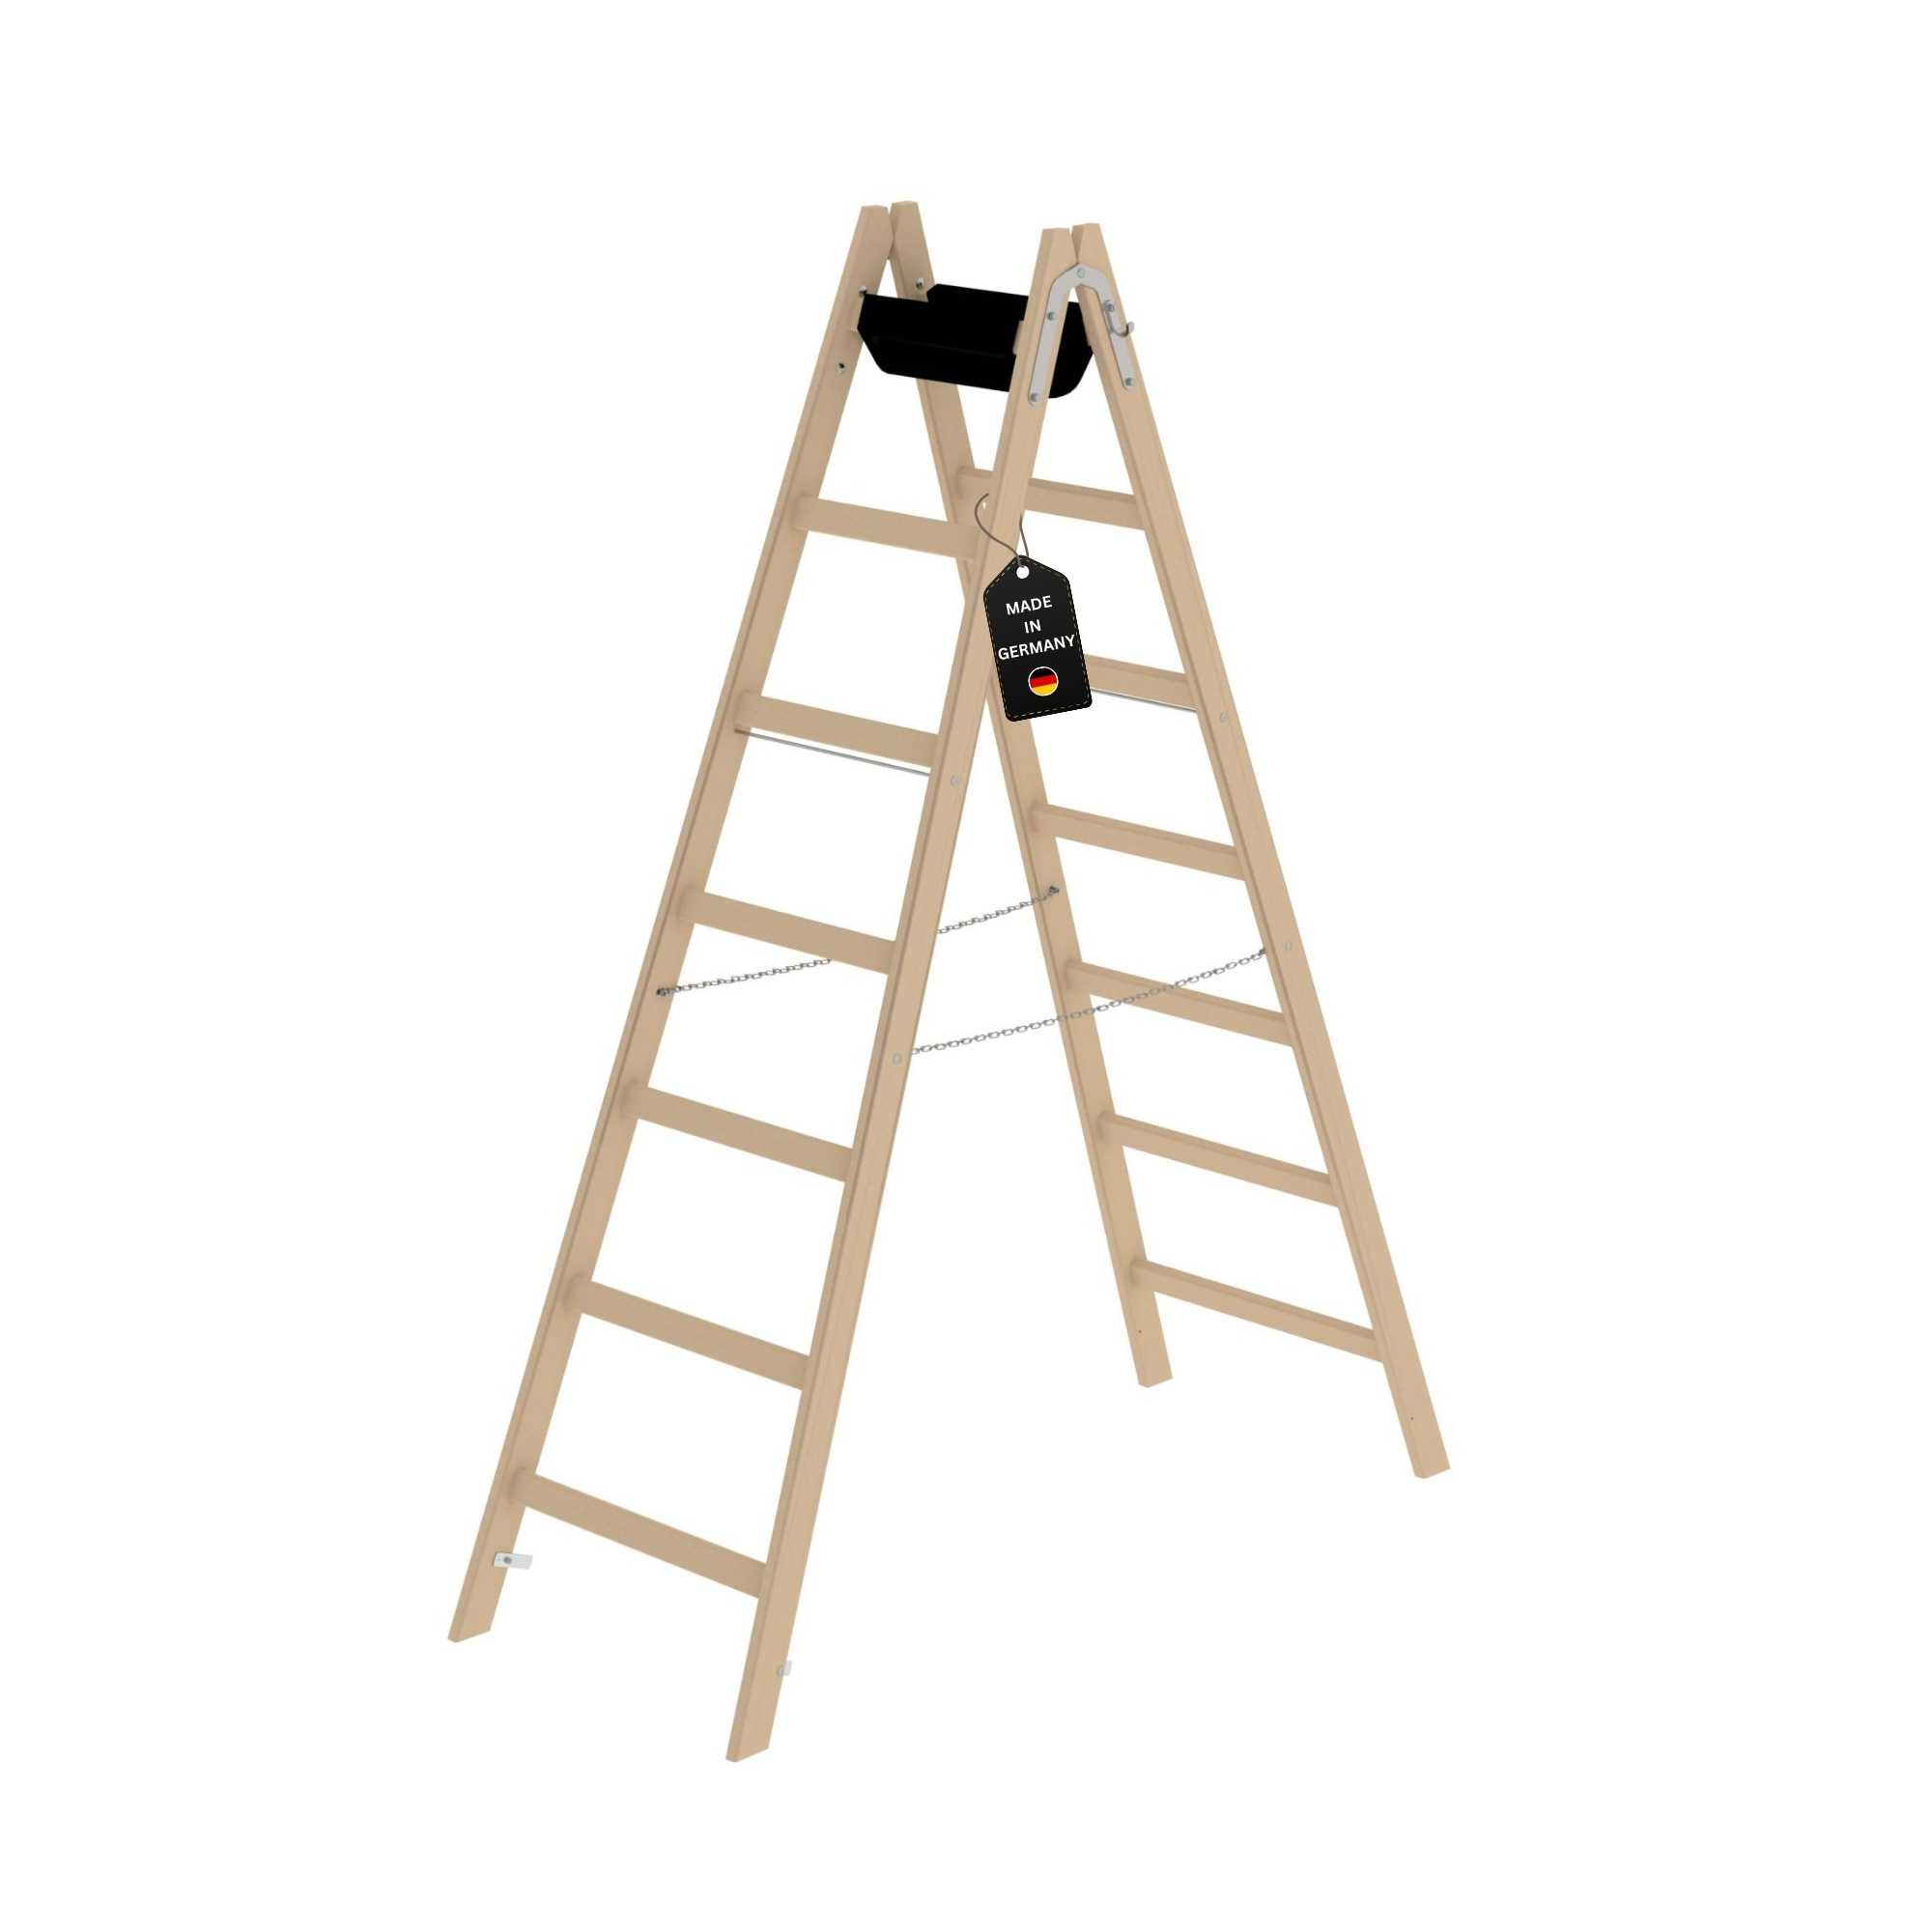 Sprossen-Stehleiter Holz 2x7 Sprossen